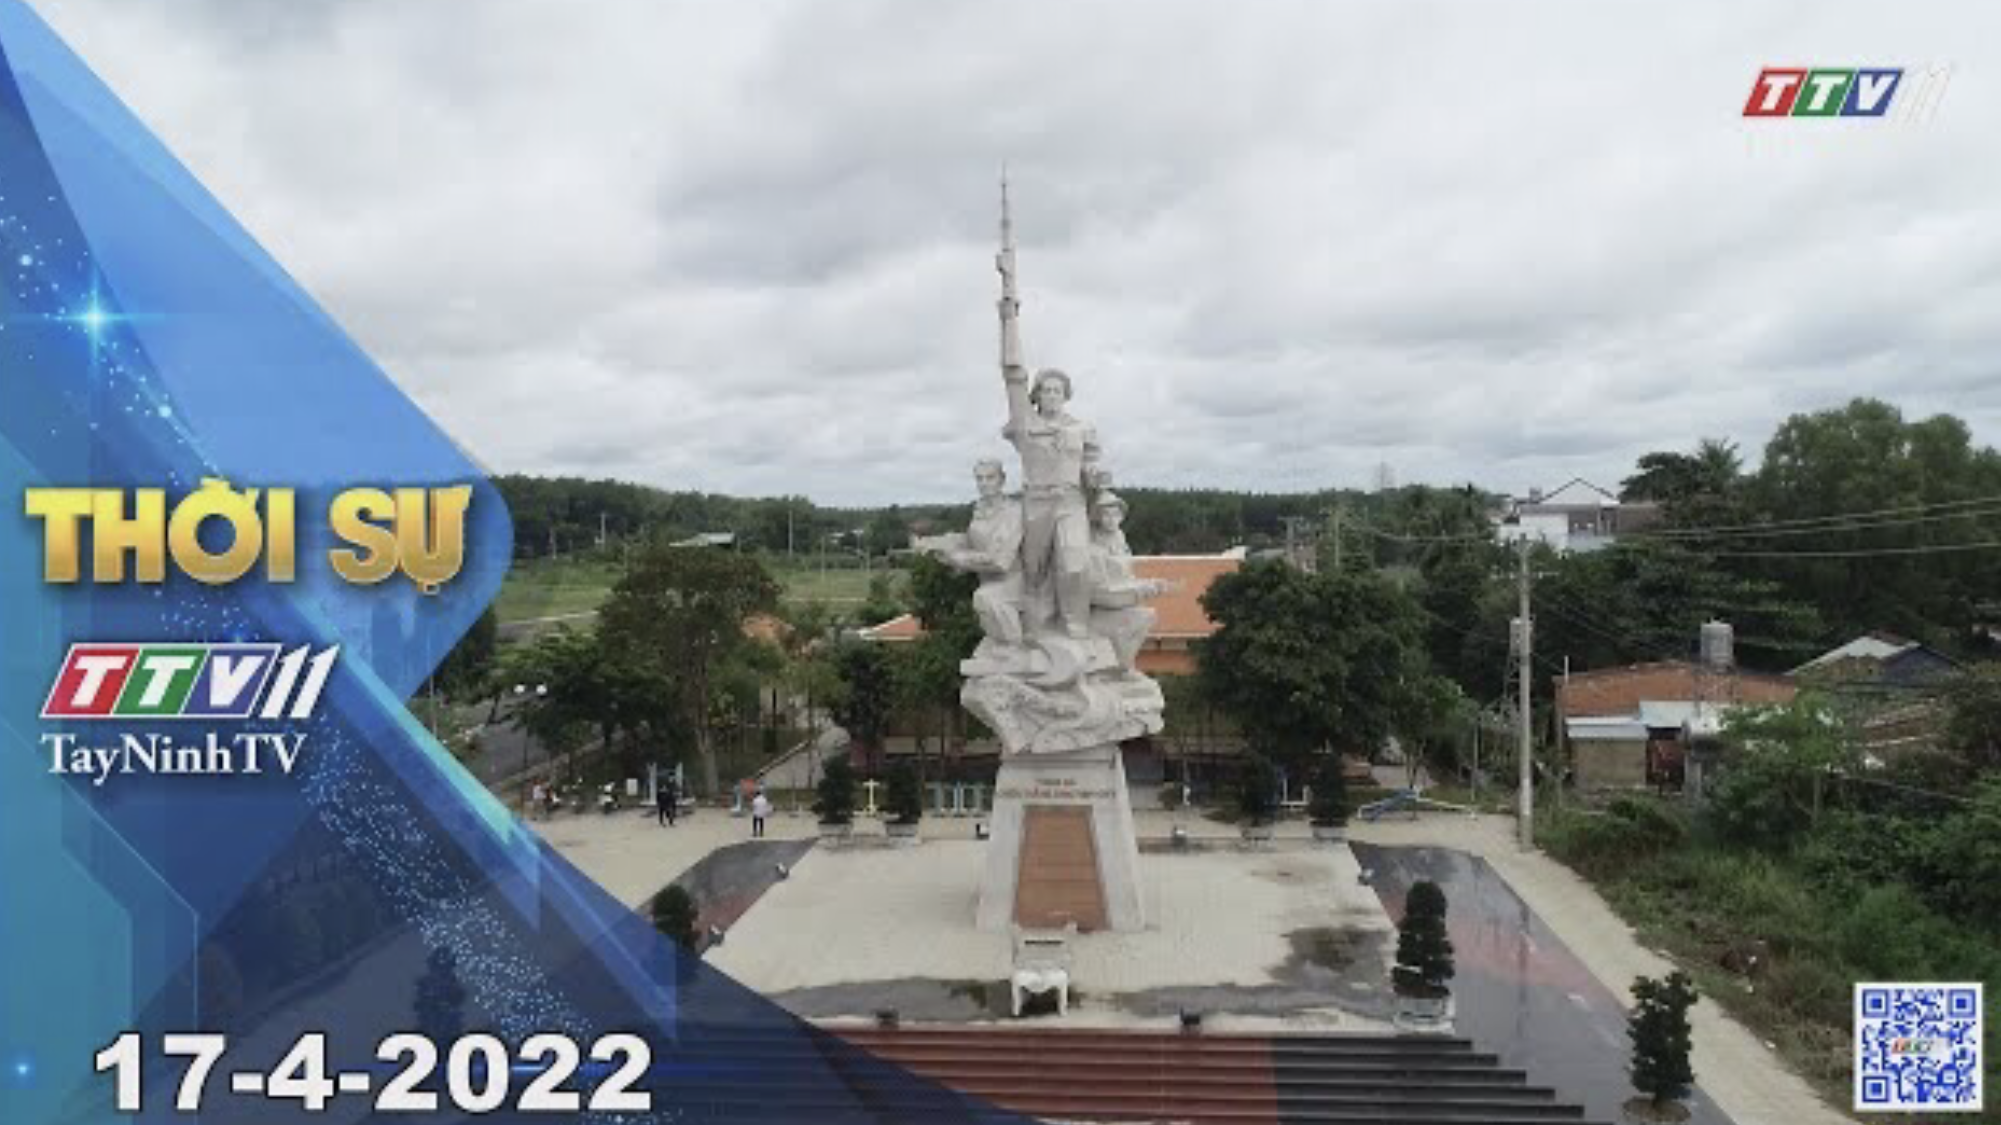 Thời sự Tây Ninh 17-4-2022| Tin tức hôm nay | TayNinhTV